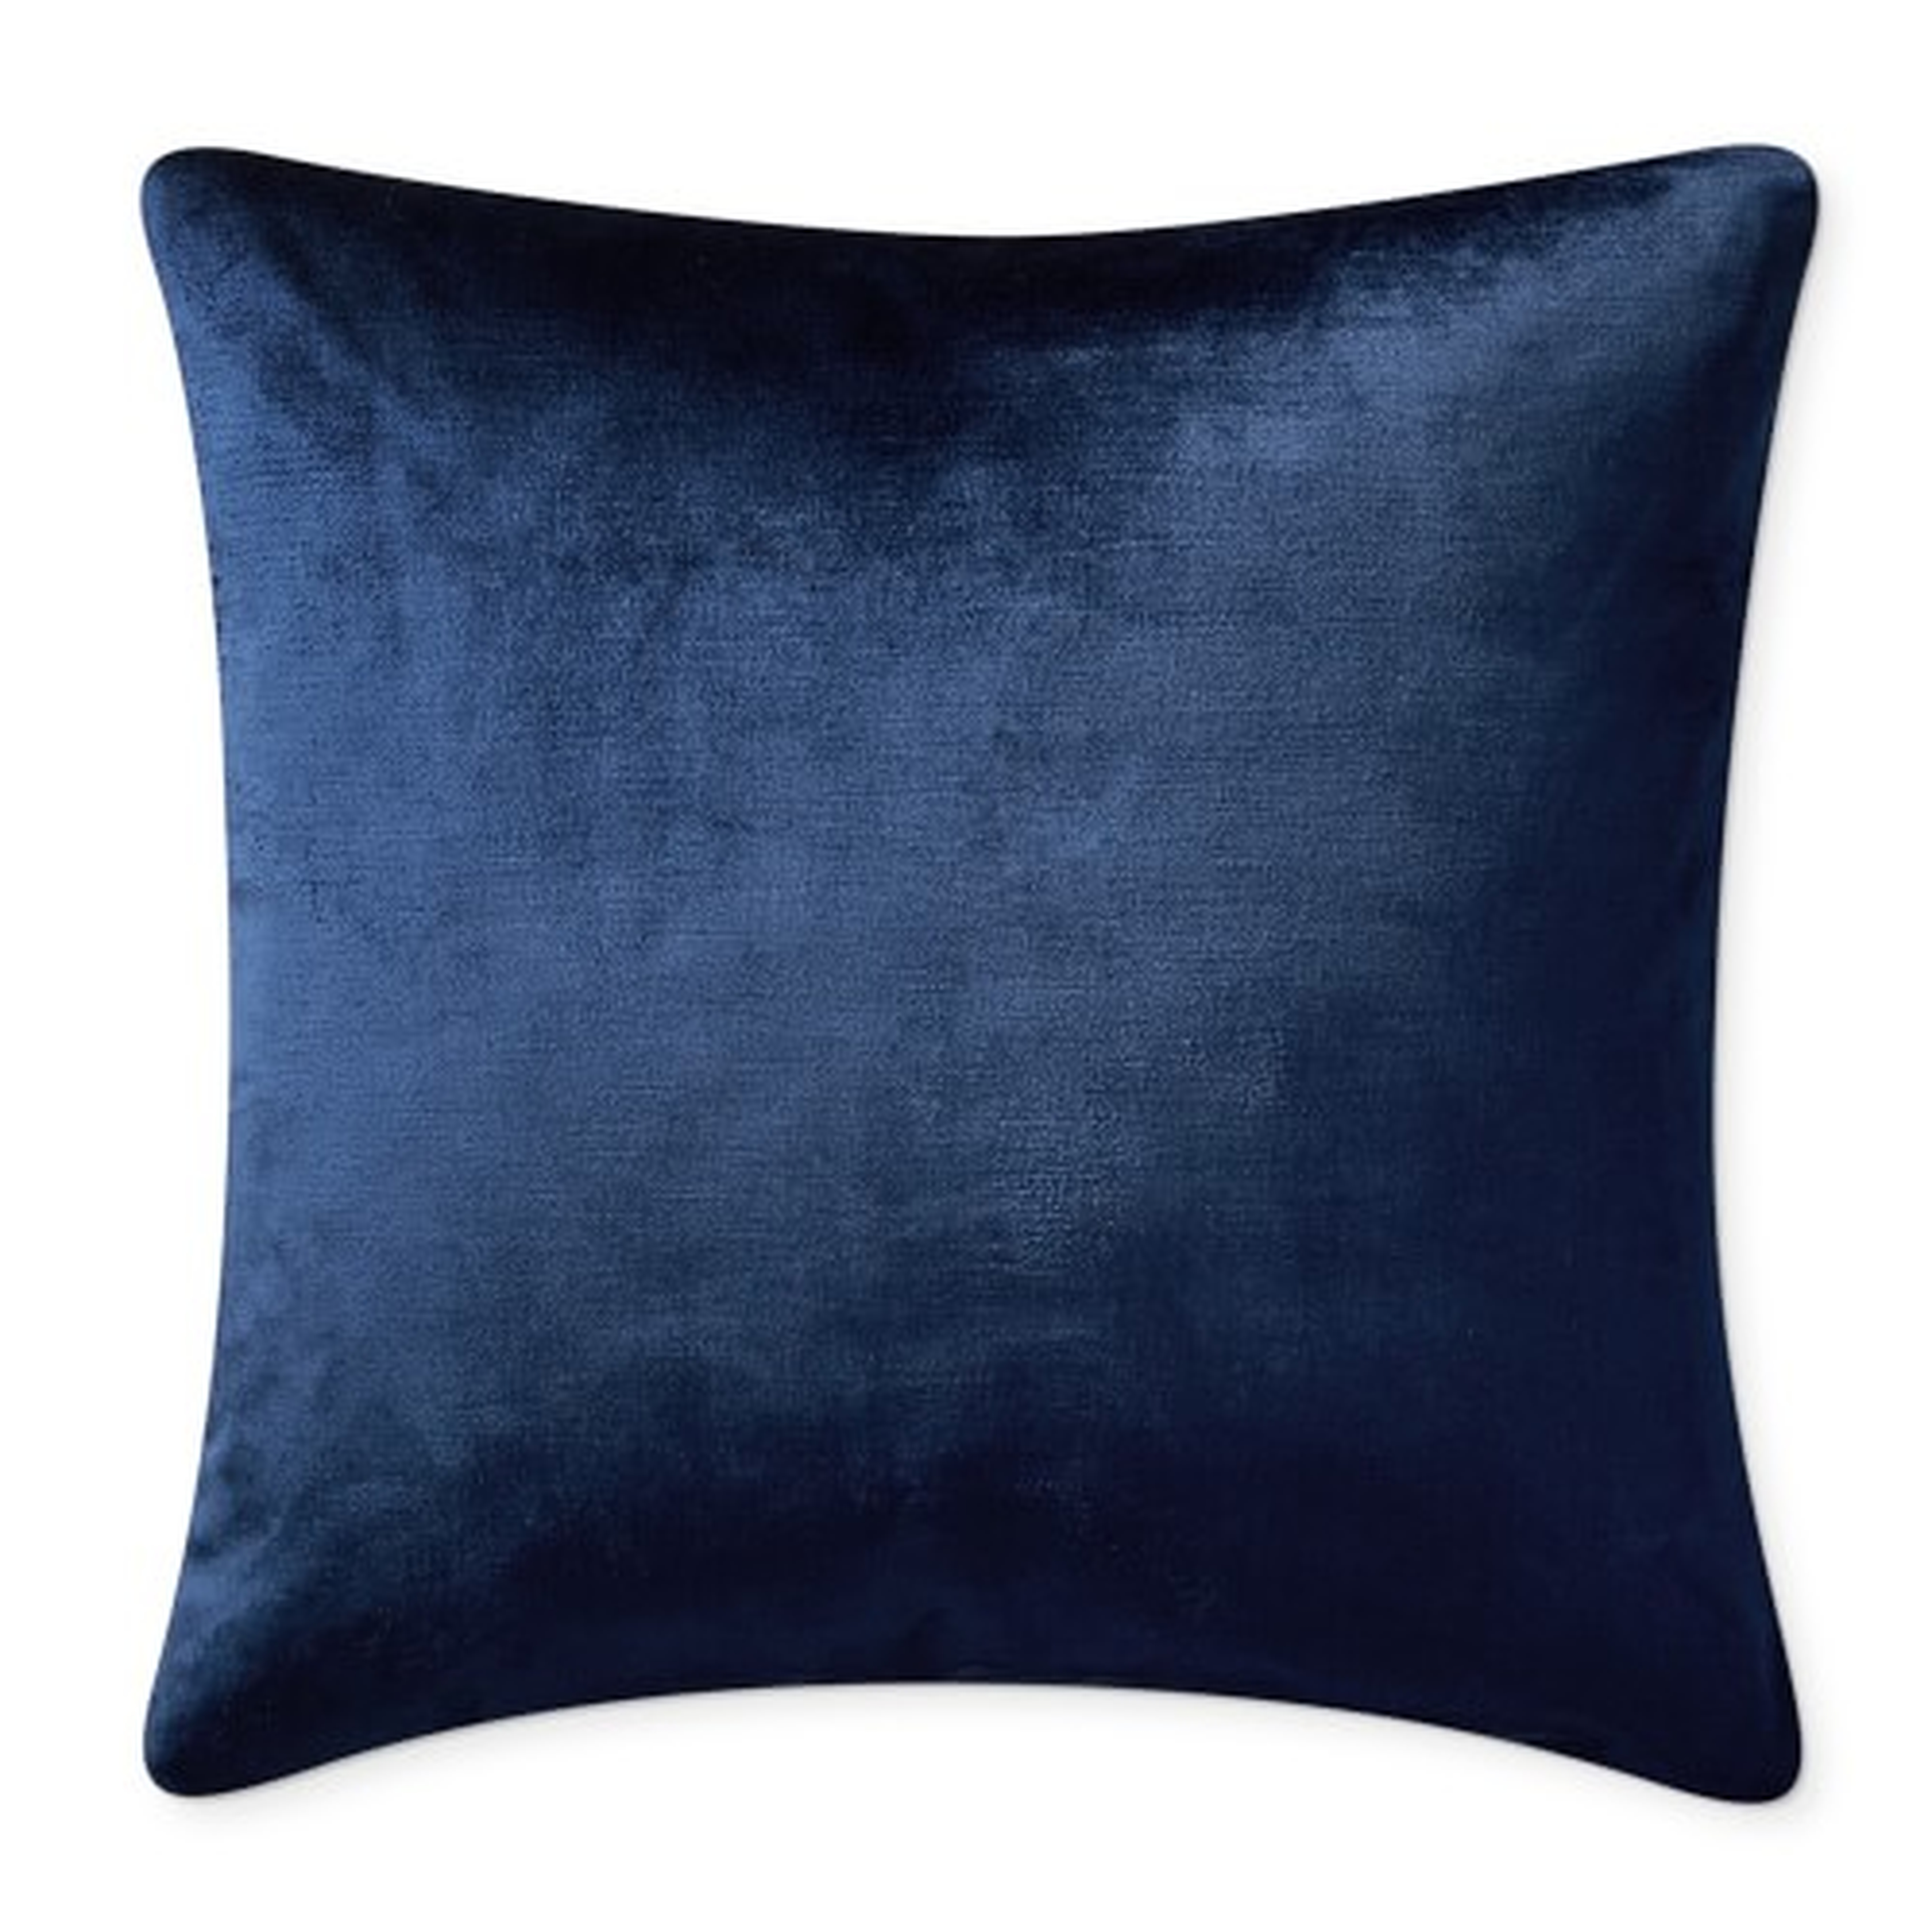 Solid Velvet Pillow Cover, 22" x 22", Navy - Williams Sonoma